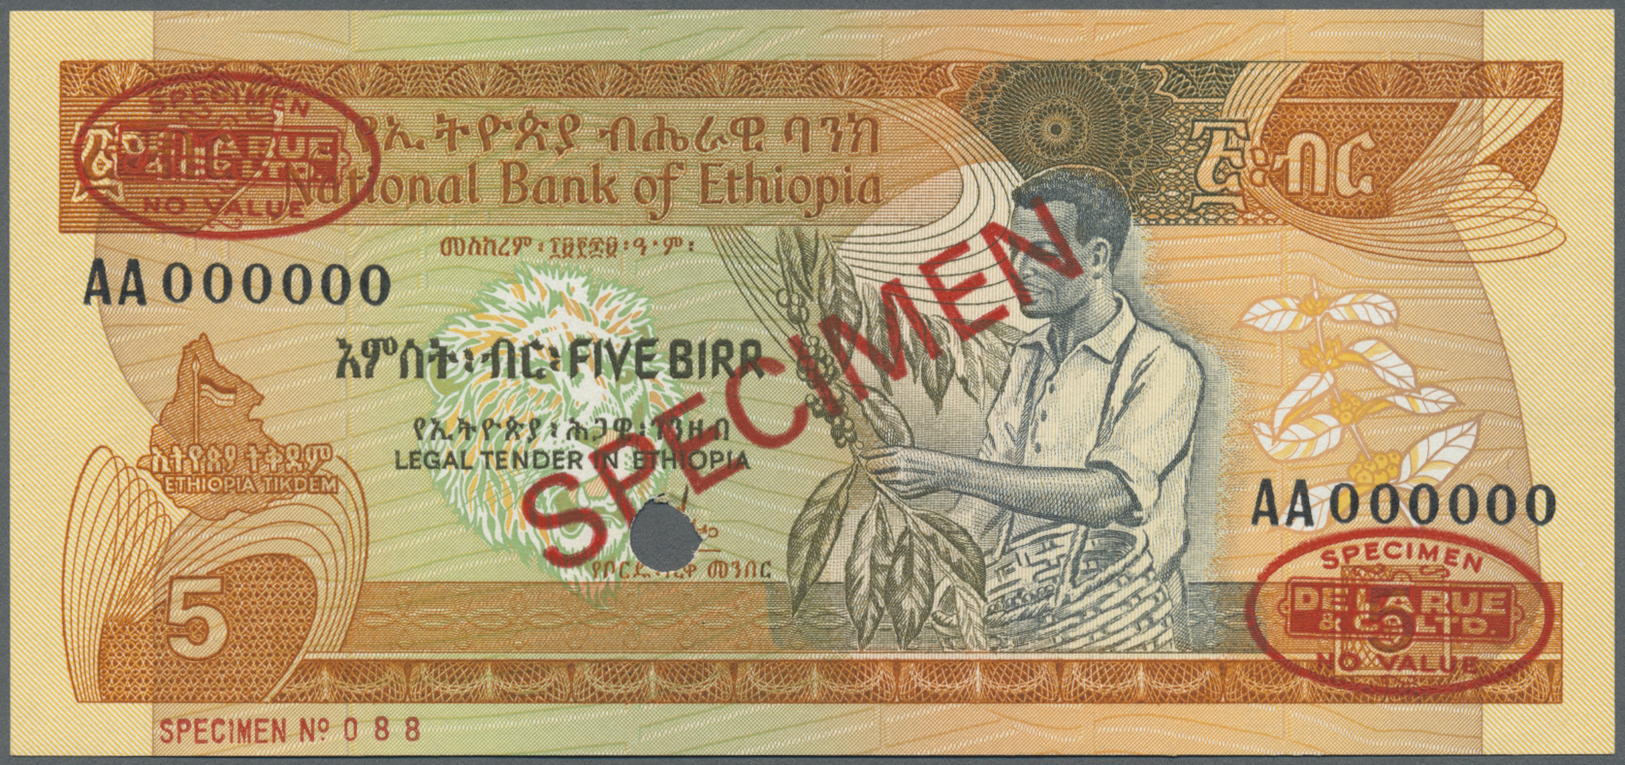 00738 Ethiopia / Äthiopien: 5 Birr 1991 Specimen P. 31as In Condition: UNC. - Ethiopia